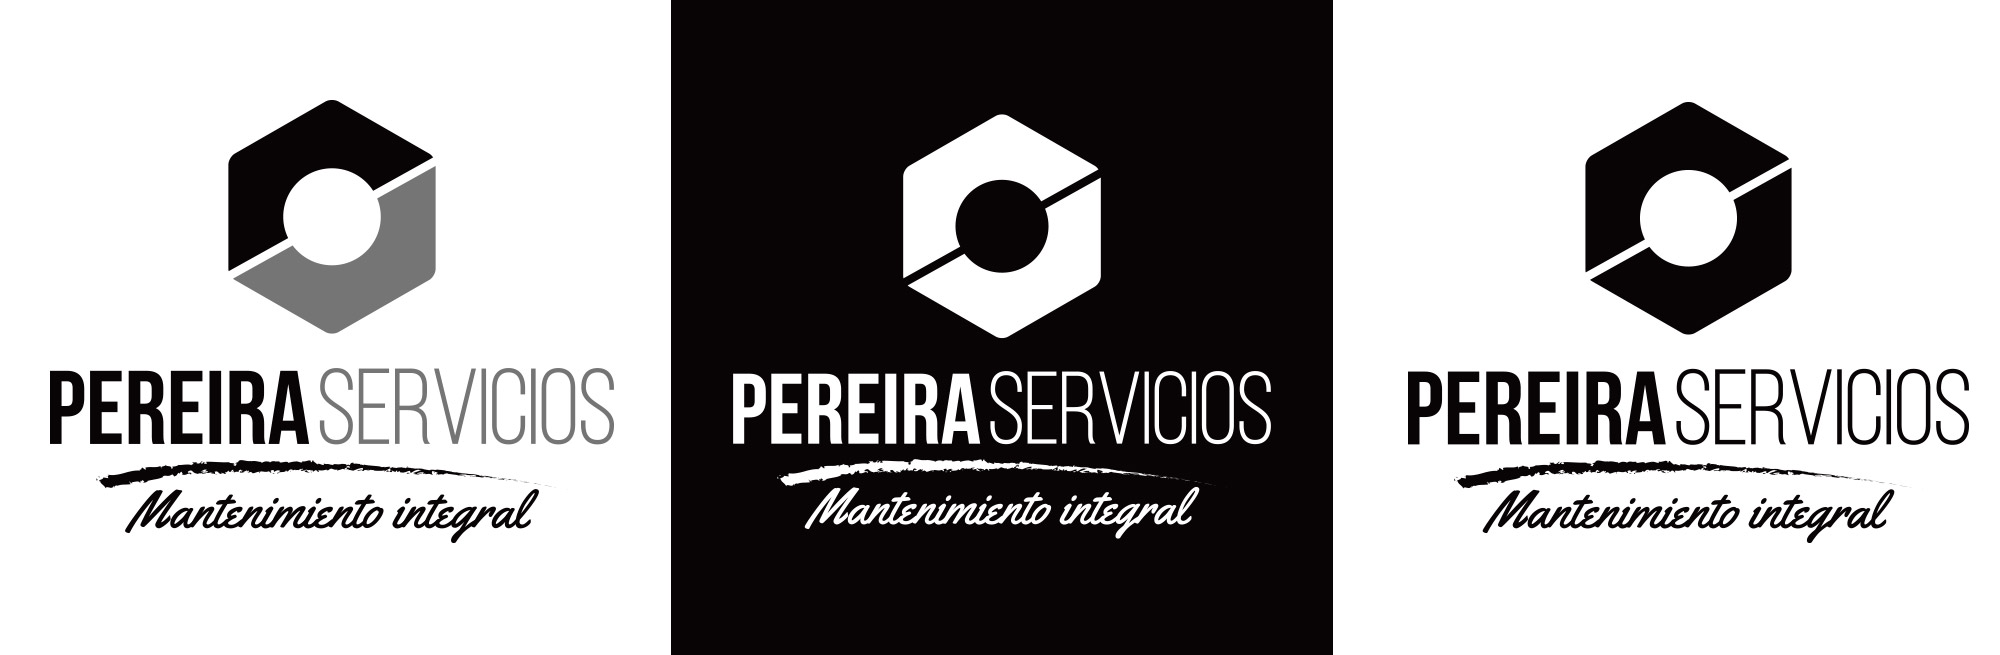 Pereira servicios - logotipo versiones